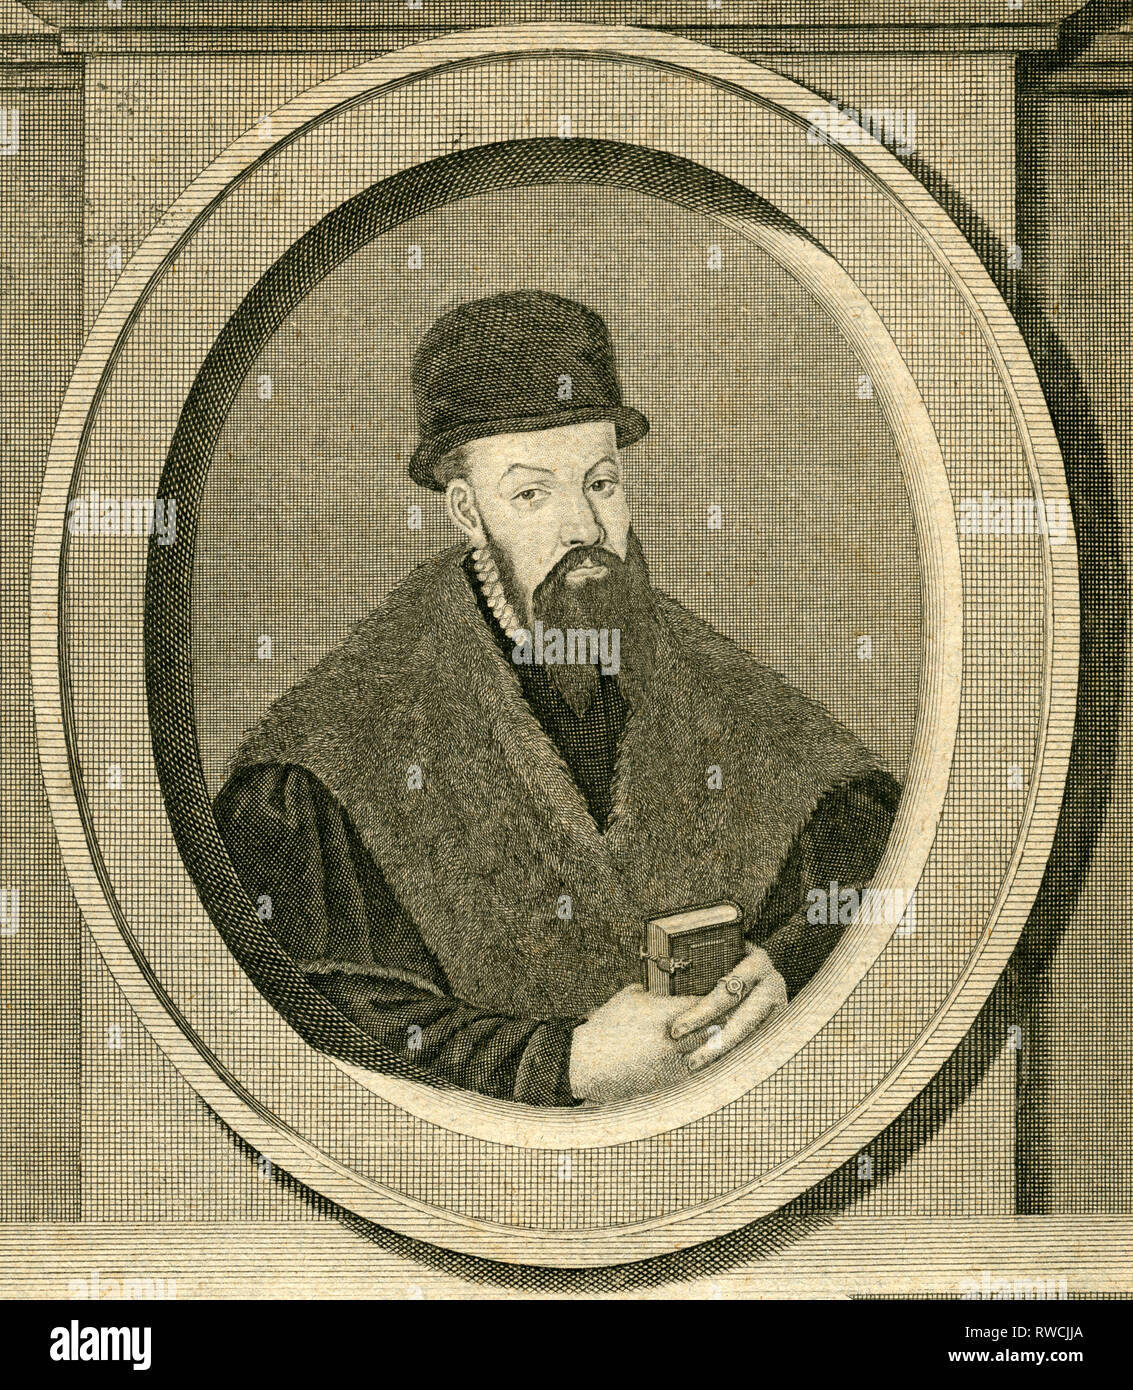 Jacob aux bordures (Jacobus) Bordingus, médecin flamand, la gravure sur cuivre vers 1700. Copyright de l'artiste, n'a pas à être effacée Banque D'Images